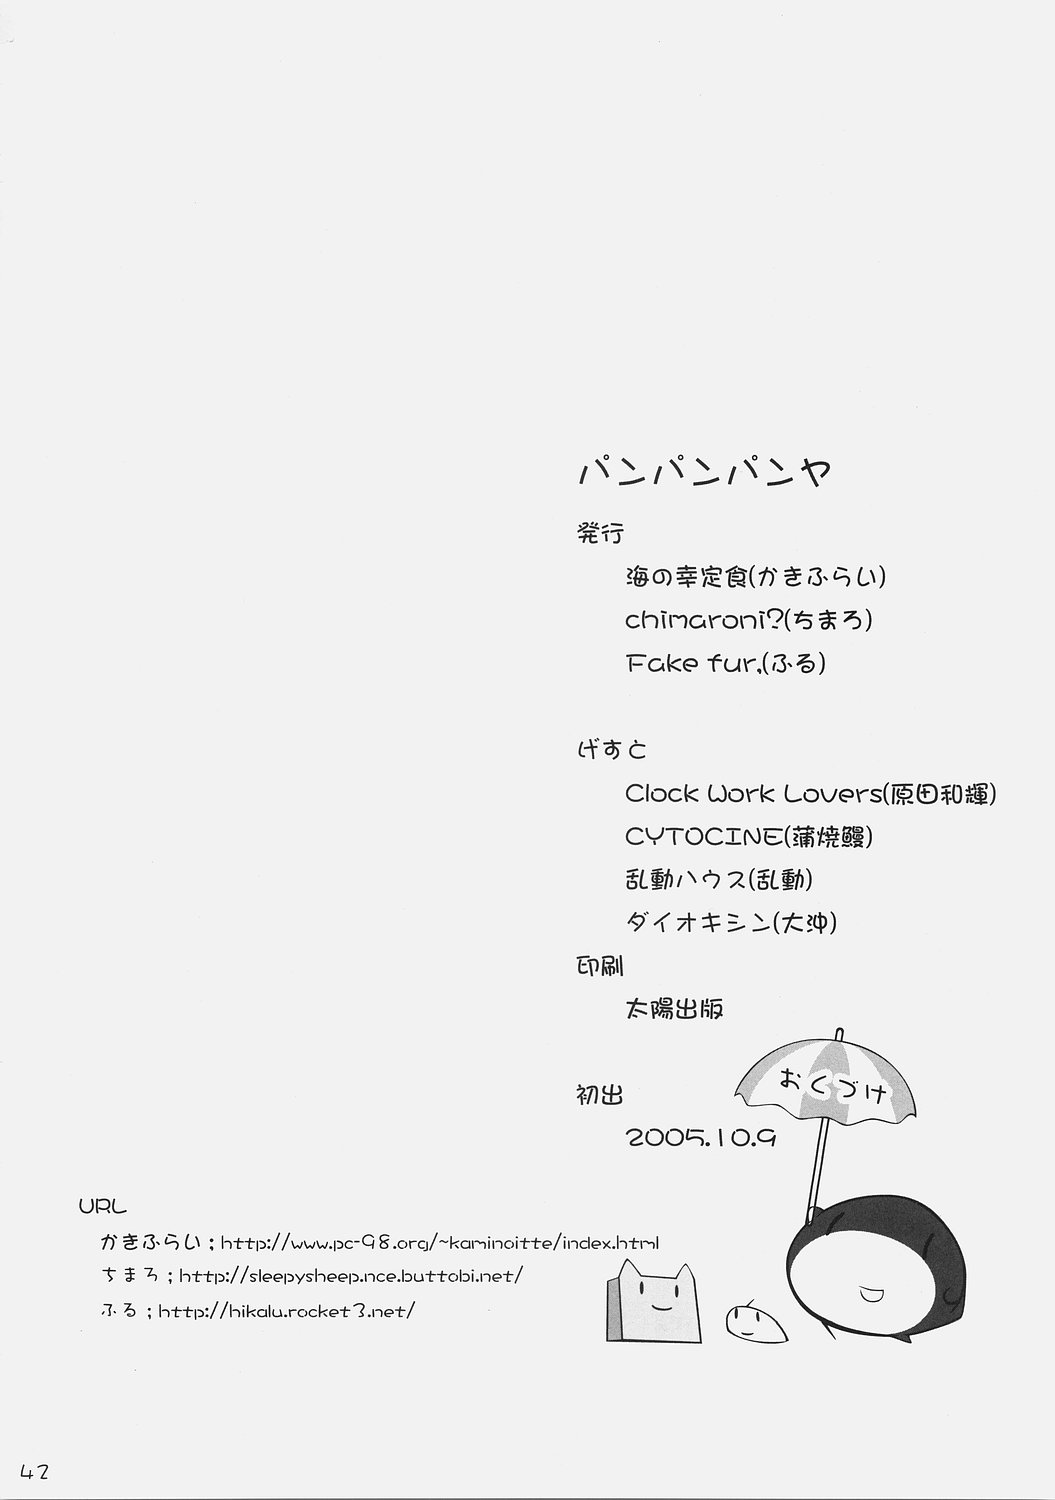 (ComiComi9) [Umi No Sachi Teishoku, Chimaroni?, Fake fur, (Kakifly, Chimaro, Furu)] PanPanPangya (Sukatto Golf Pangya) page 41 full